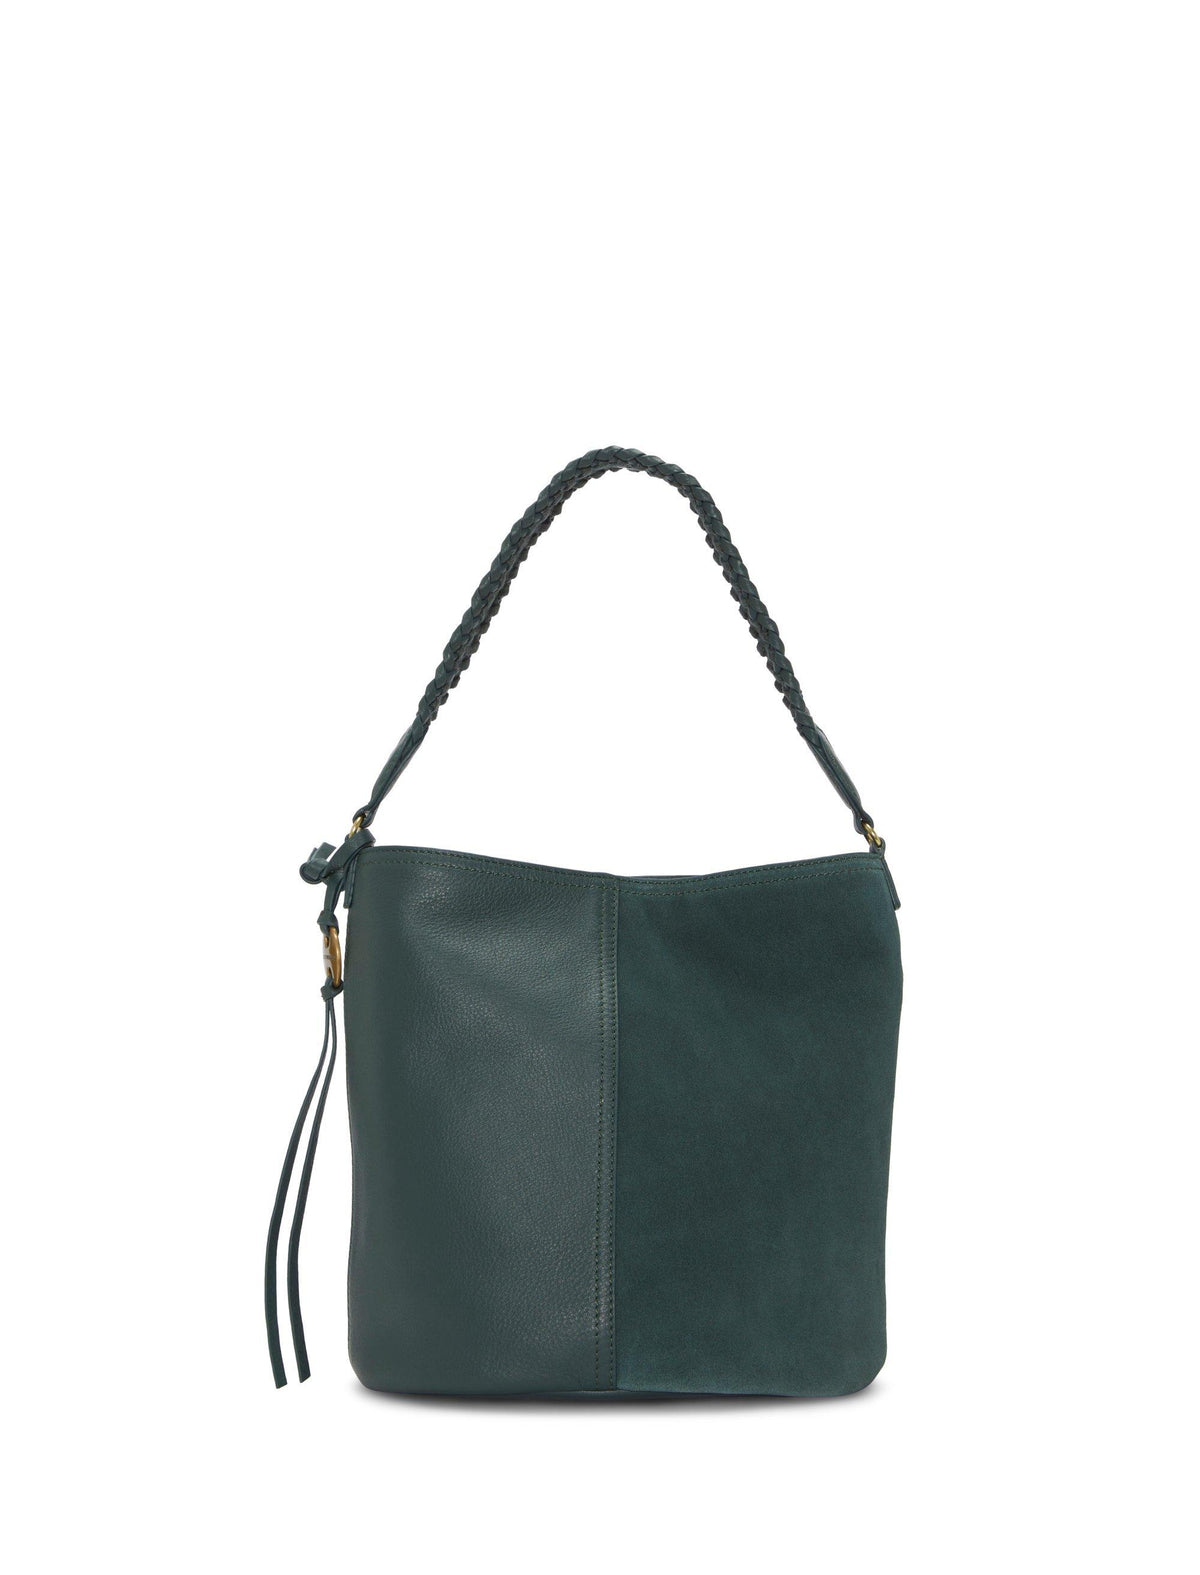 Lucky Brand Salz Crossbody - Women's Accessories Handbags Purse Crossbody Bag Light Green